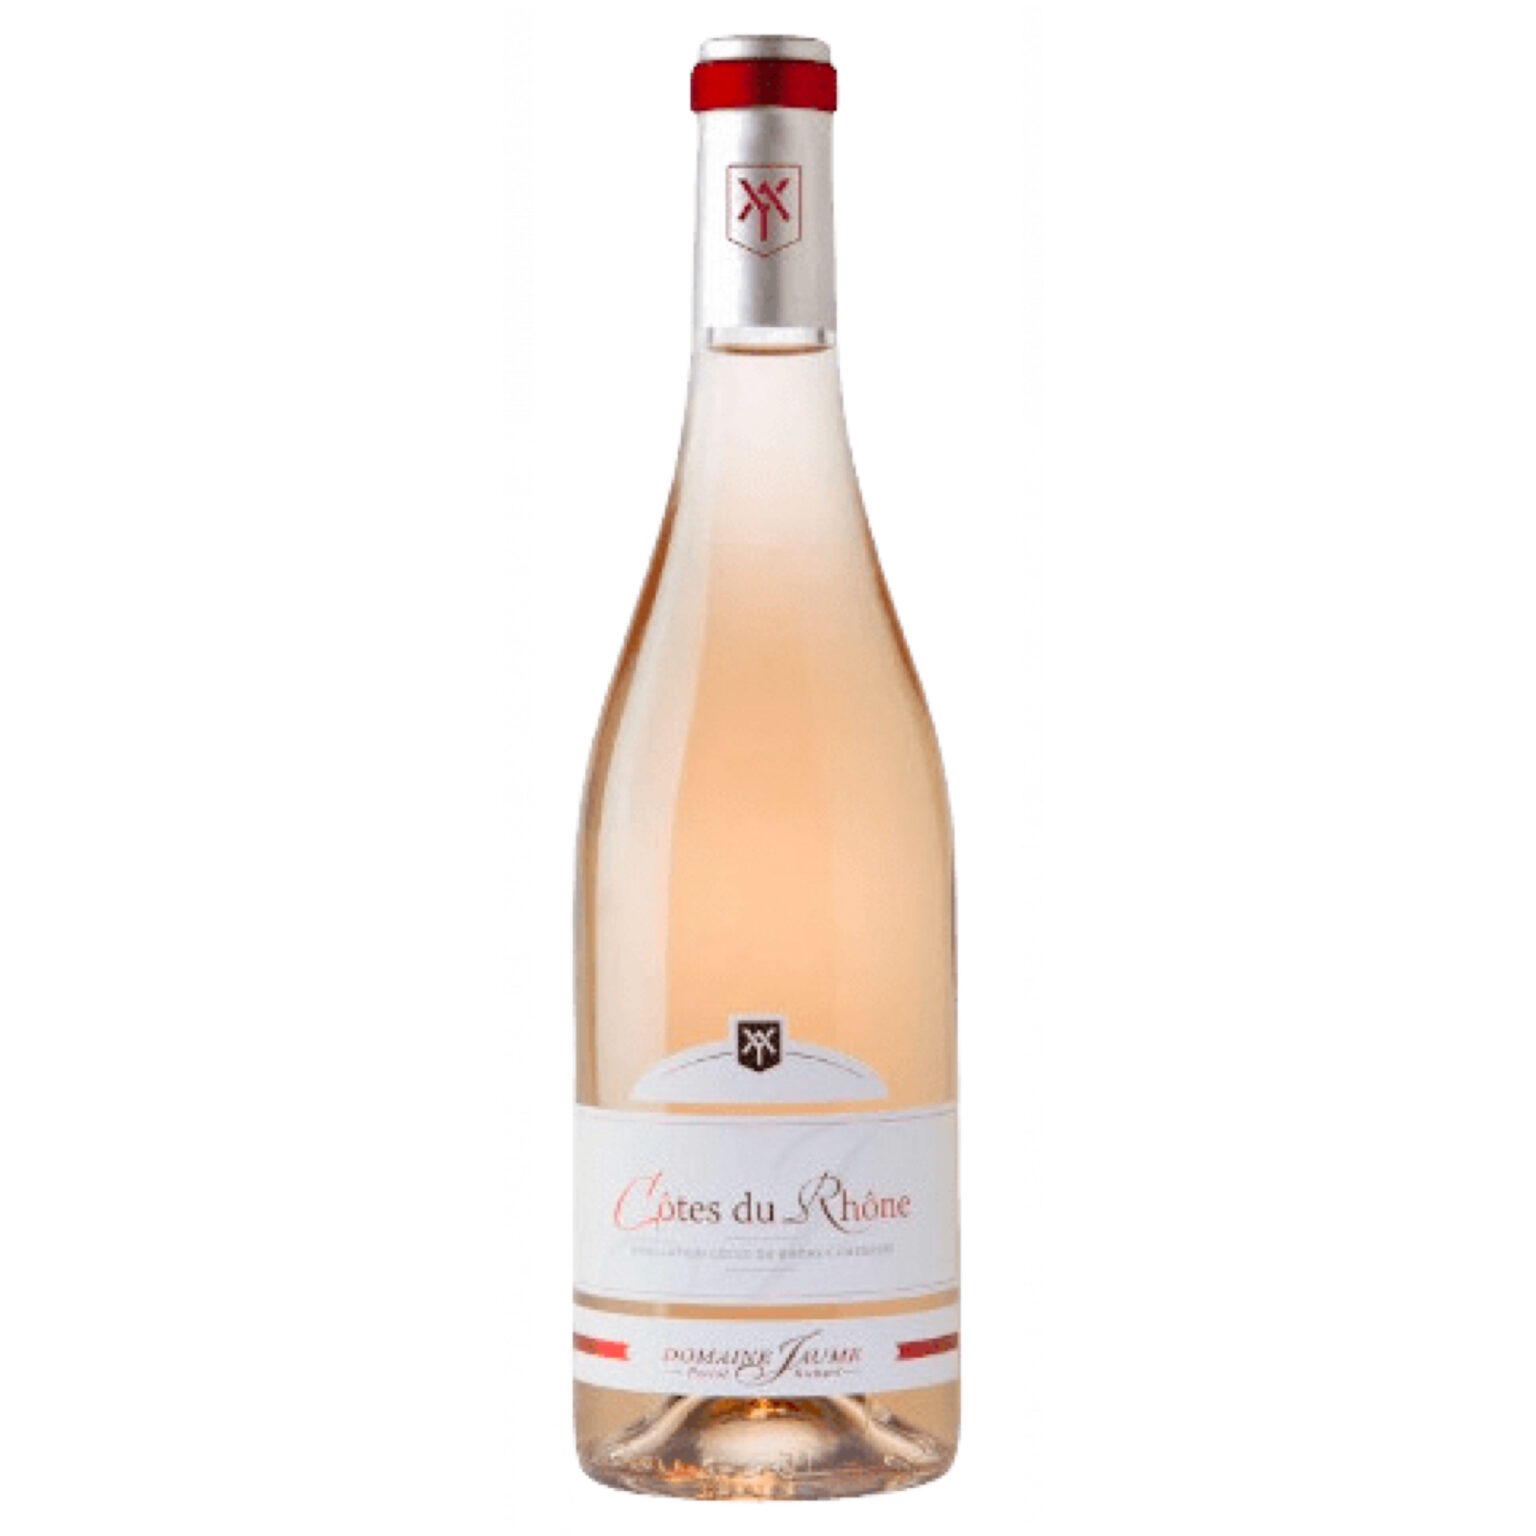 Domaine Jaume Cotes du Rhone rose The Spirit of Wine